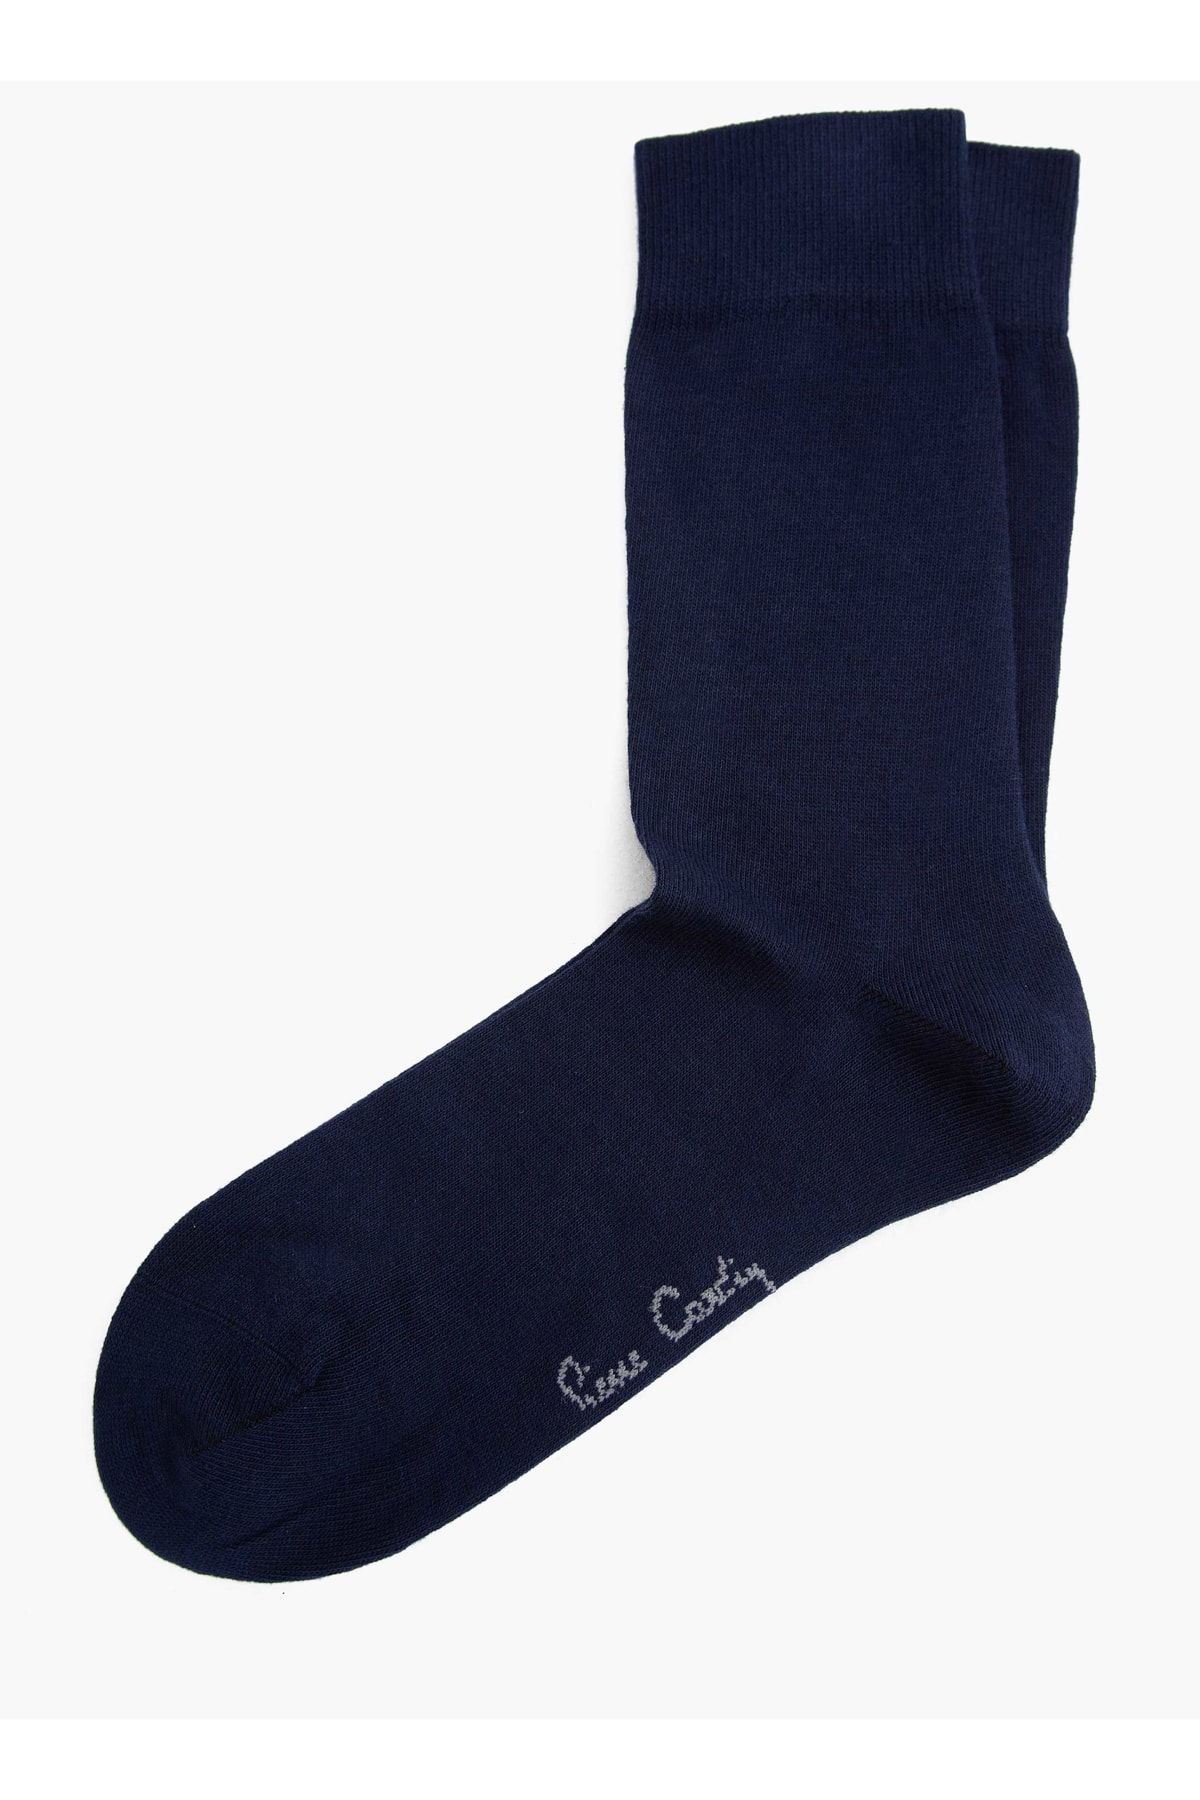 Pierre Cardin Erkek Çorap A021AK013.000.O20-18K